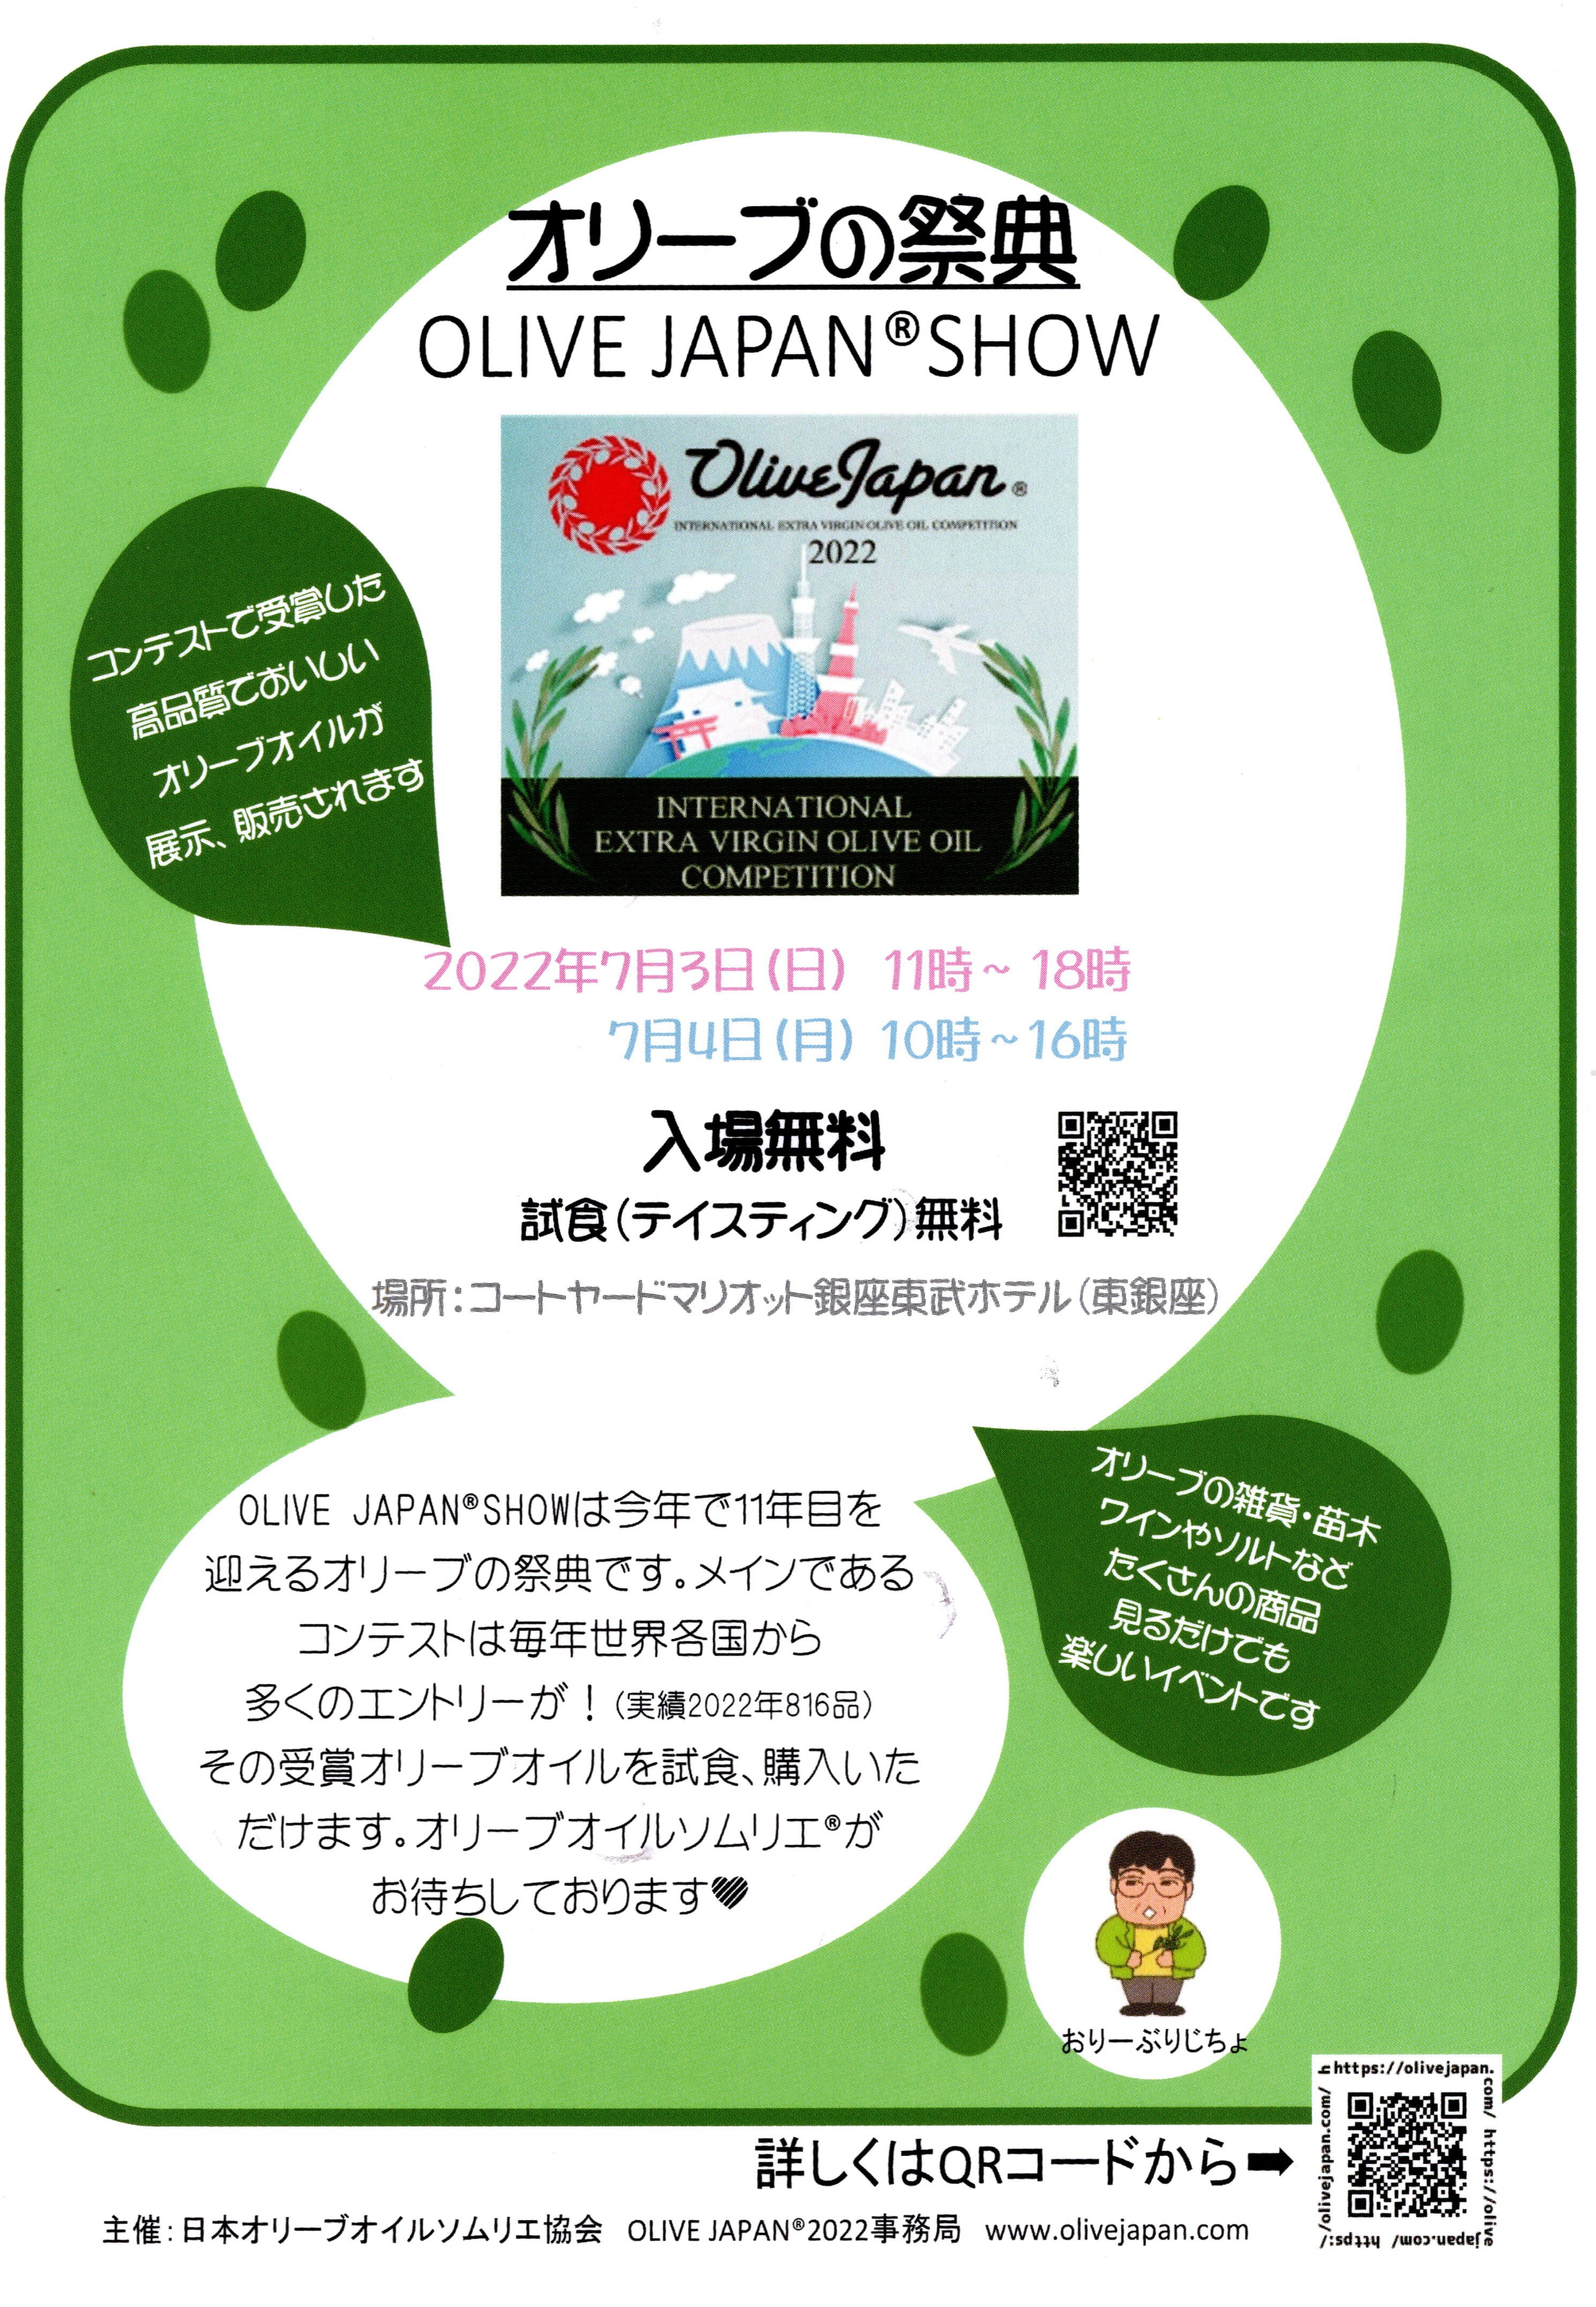 ７月 3日(日), 4日(月) 、Olive Japan ®︎Show 2022 に出展します！